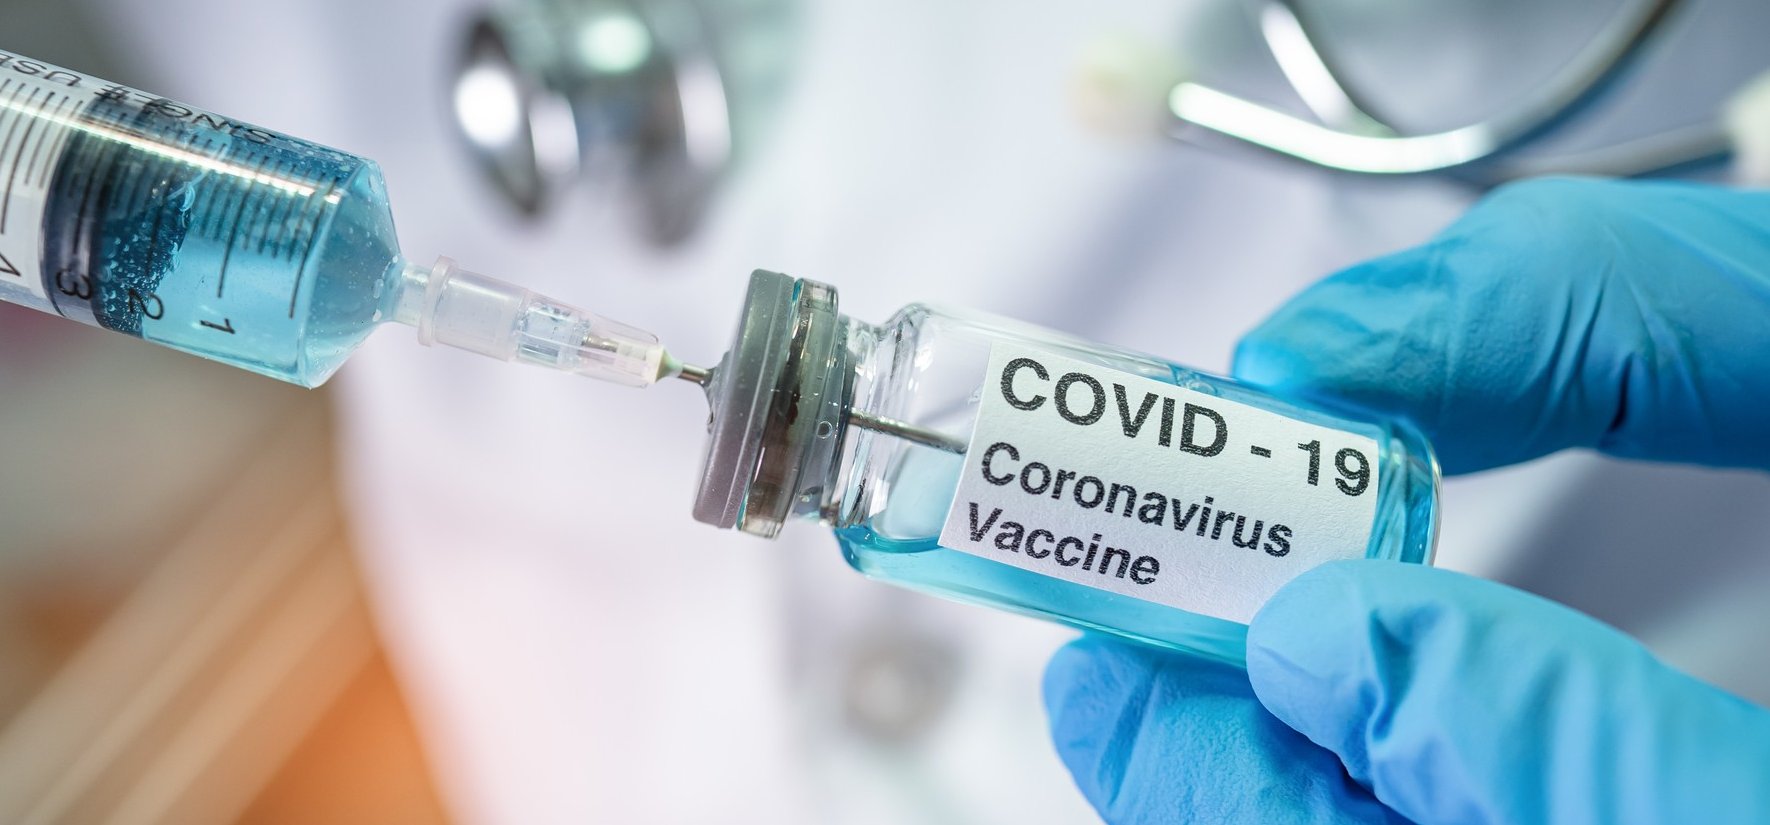 A kormány fontos bejelentést tett a koronavírus-járvánnyal kapcsolatban, amiről mindenkinek érdemes tudni